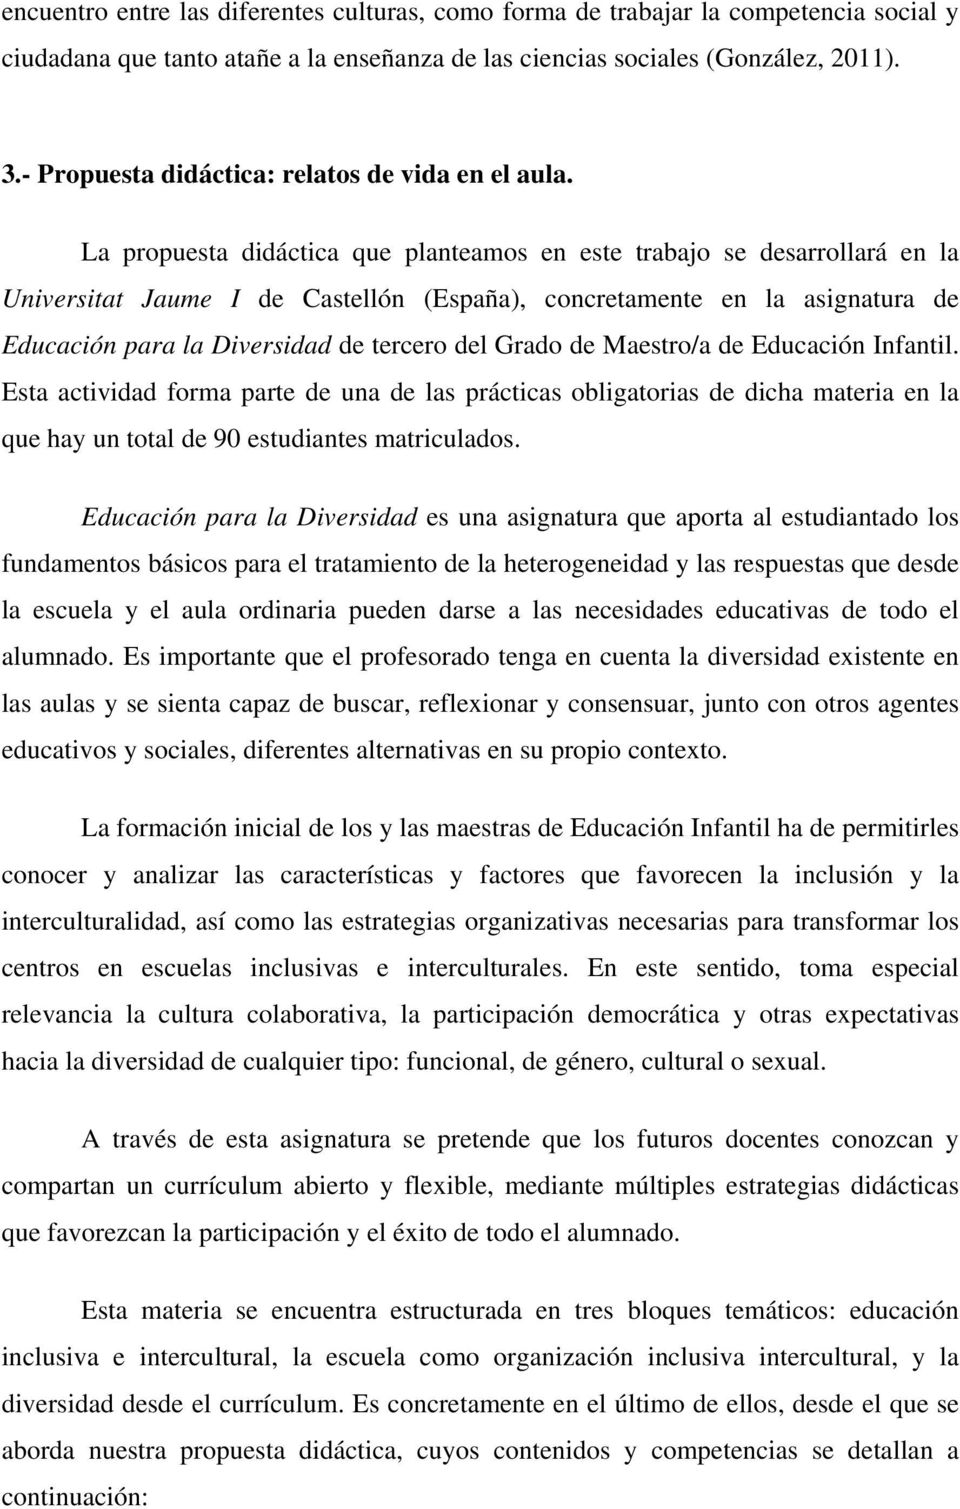 La propuesta didáctica que planteamos en este trabajo se desarrollará en la Universitat Jaume I de Castellón (España), concretamente en la asignatura de Educación para la Diversidad de tercero del